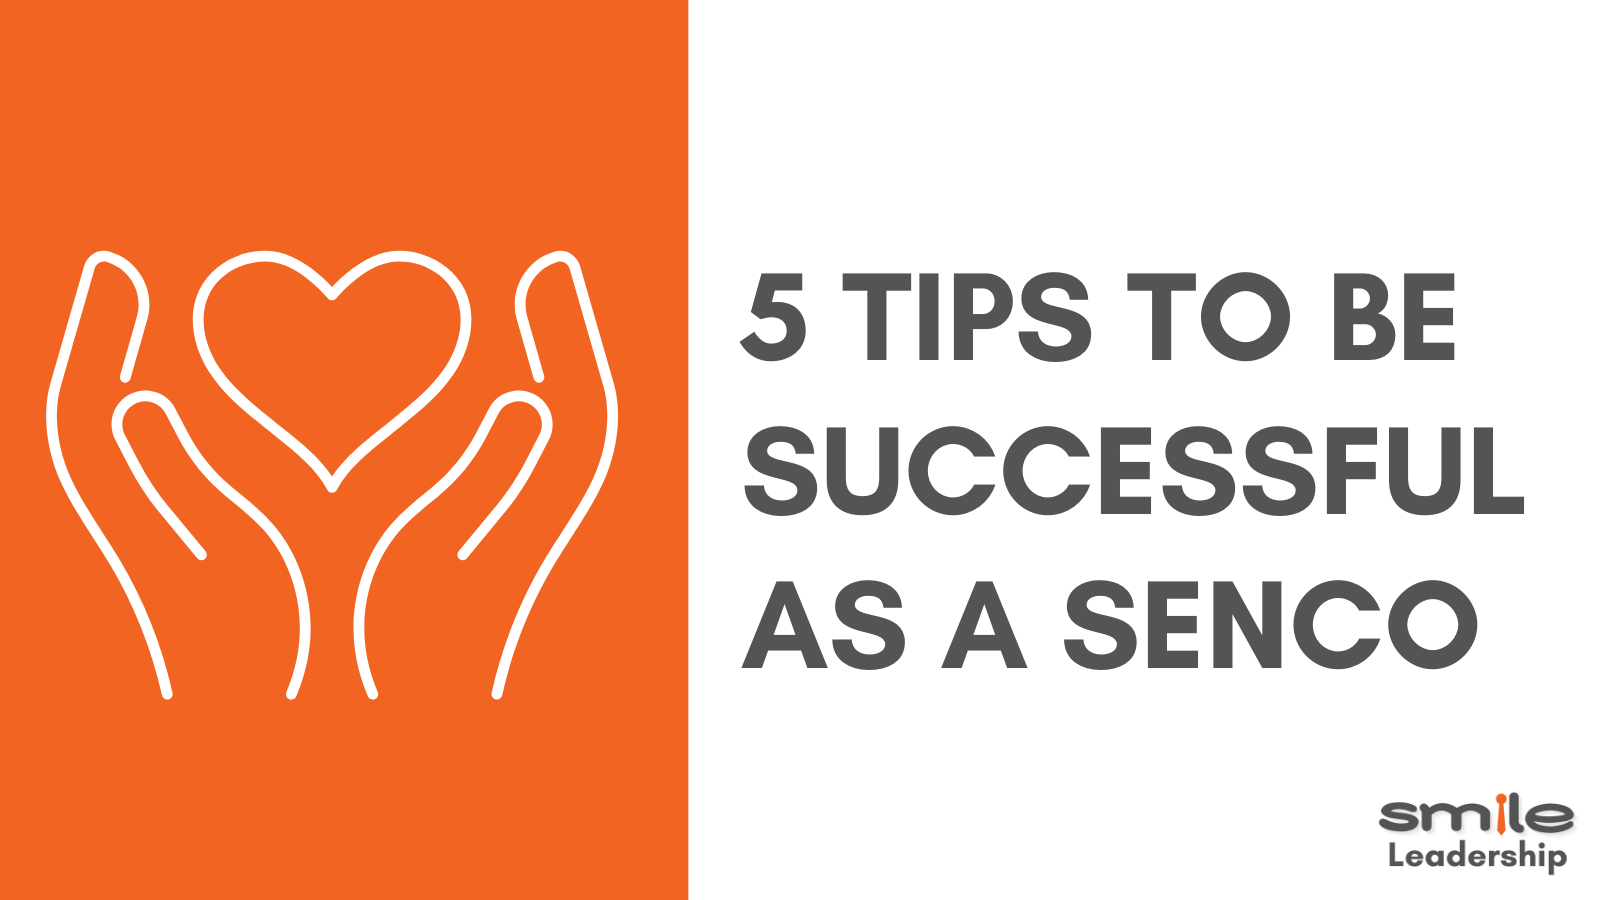 5 Tips for SENCos